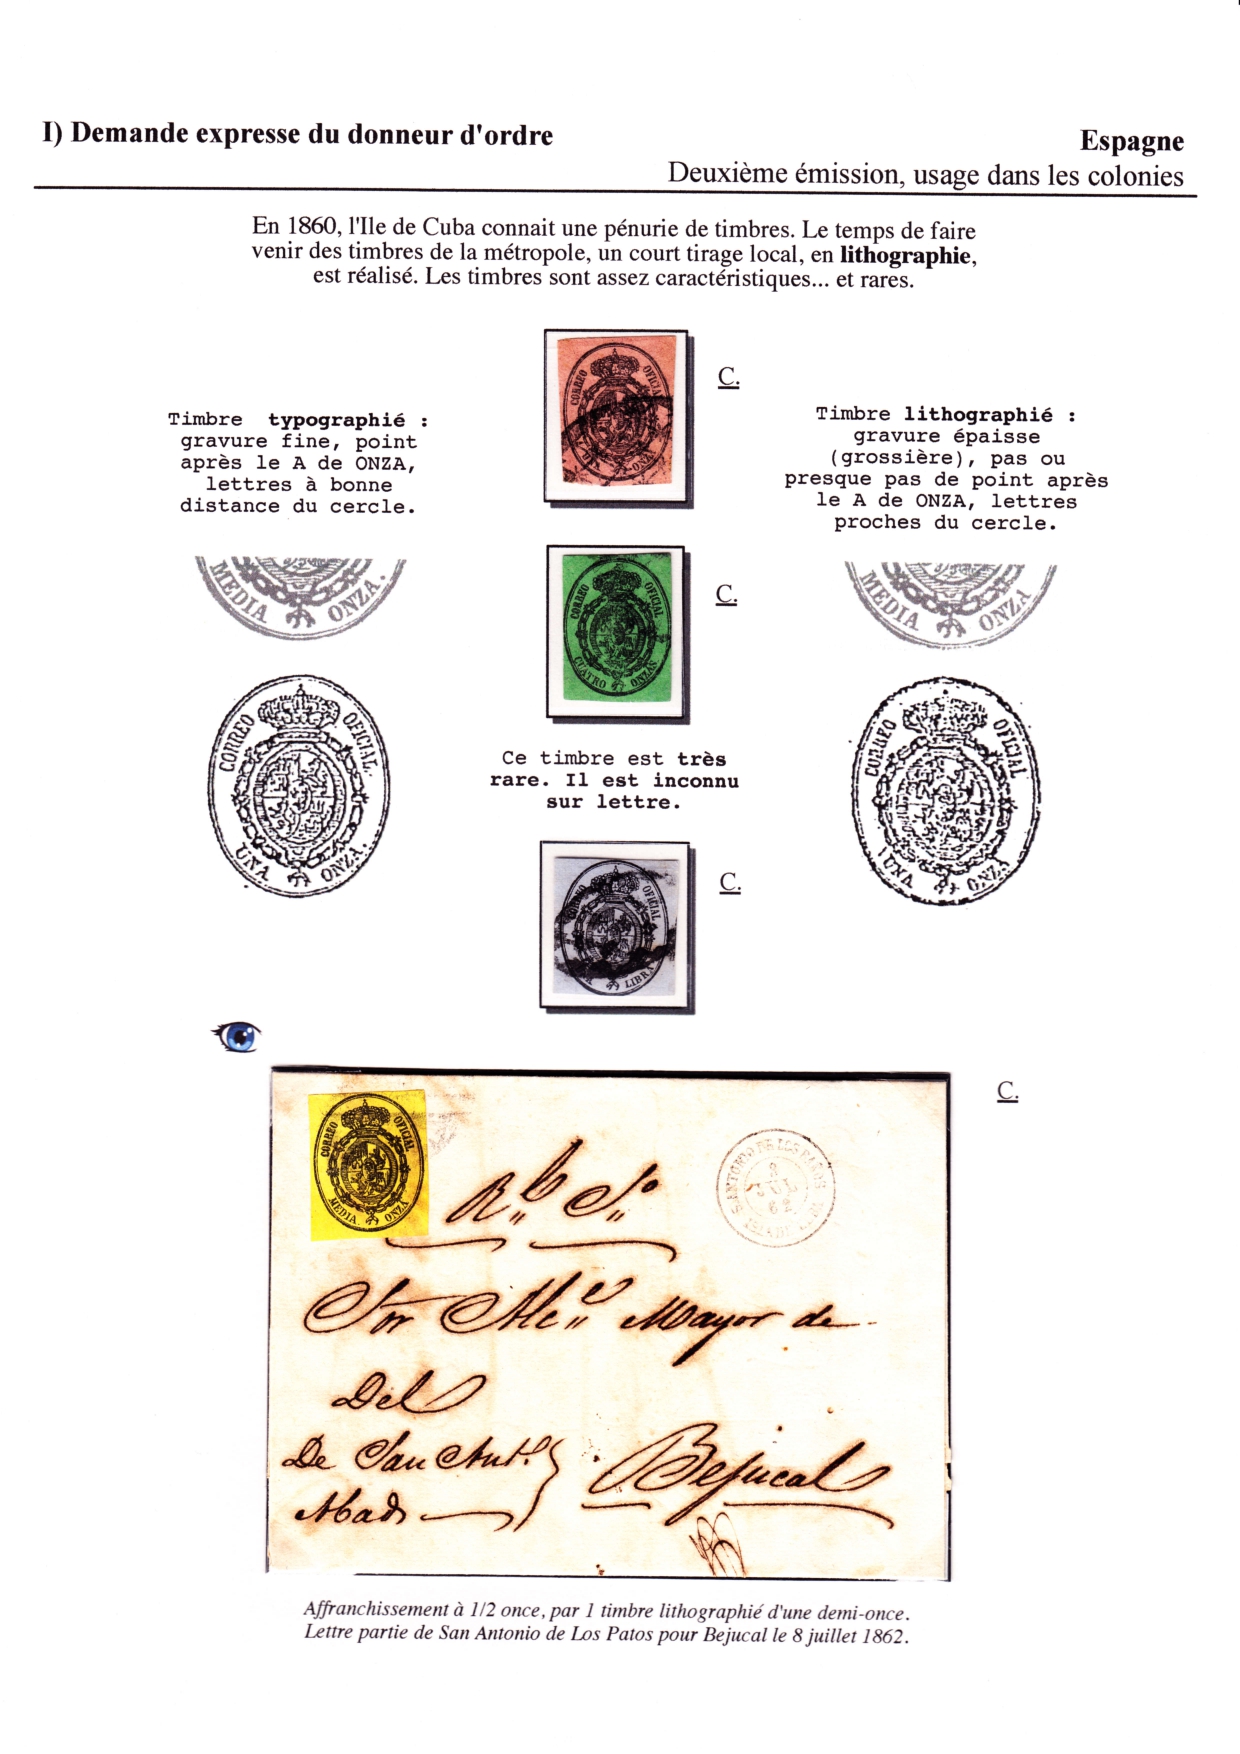 Les d��buts des timbres sans valeur faciale apparente p. 9